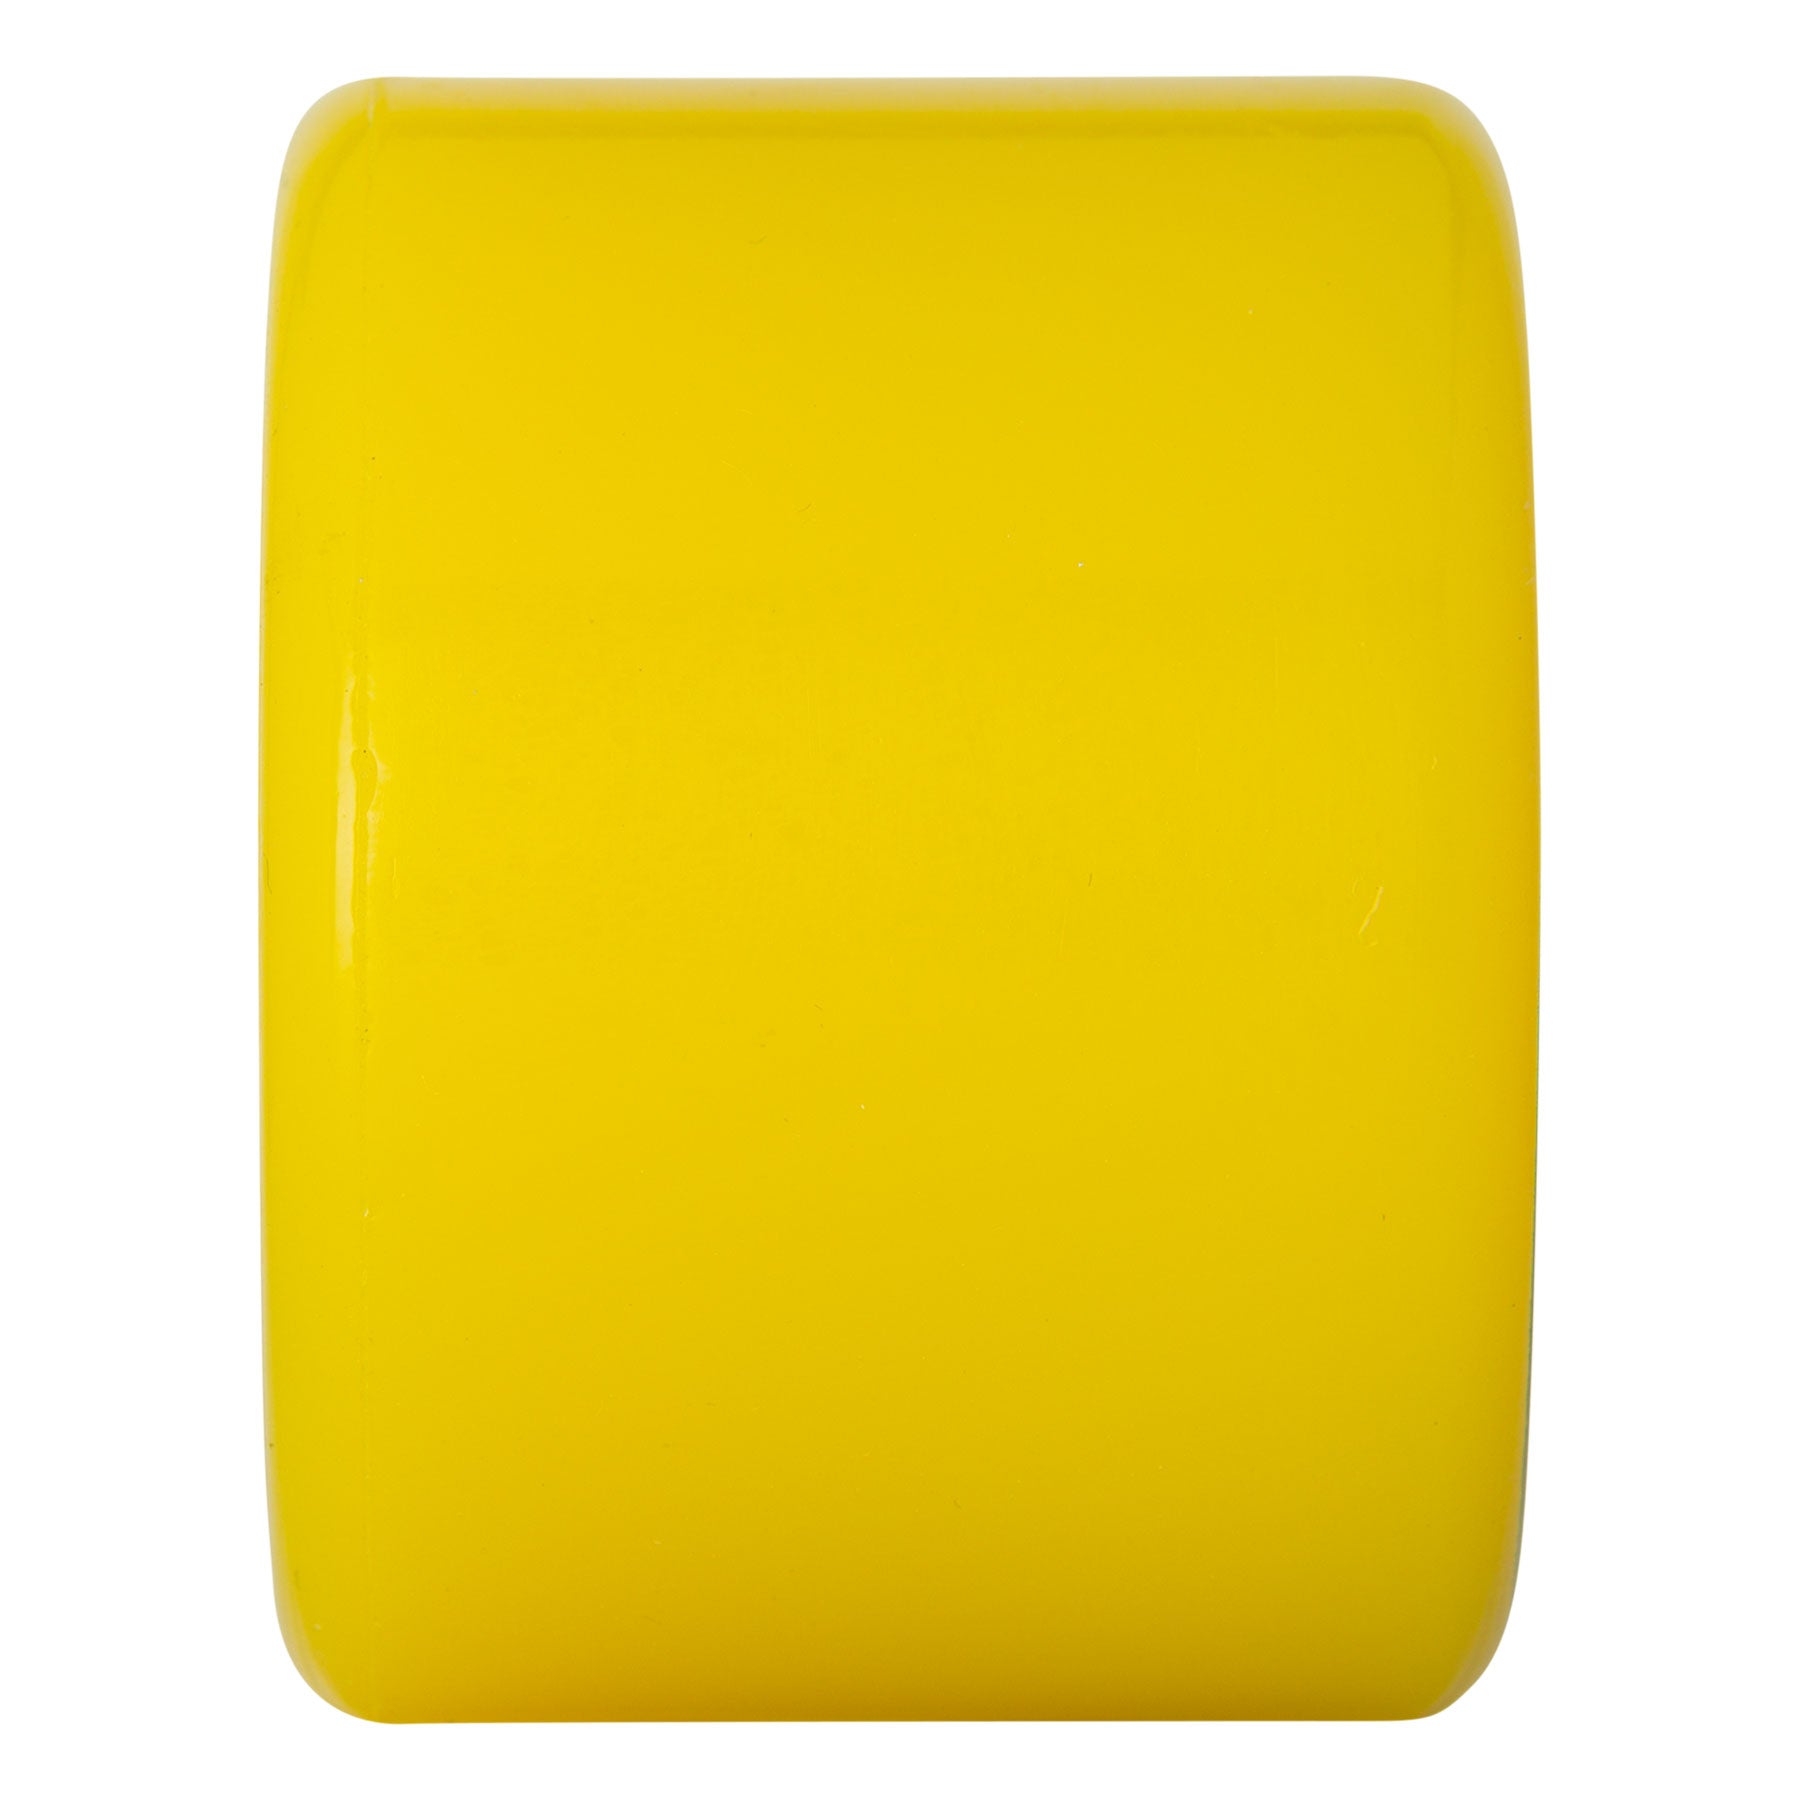 60mm MOONEYES Super Juice Yellow 78a OJ Skateboard Wheels